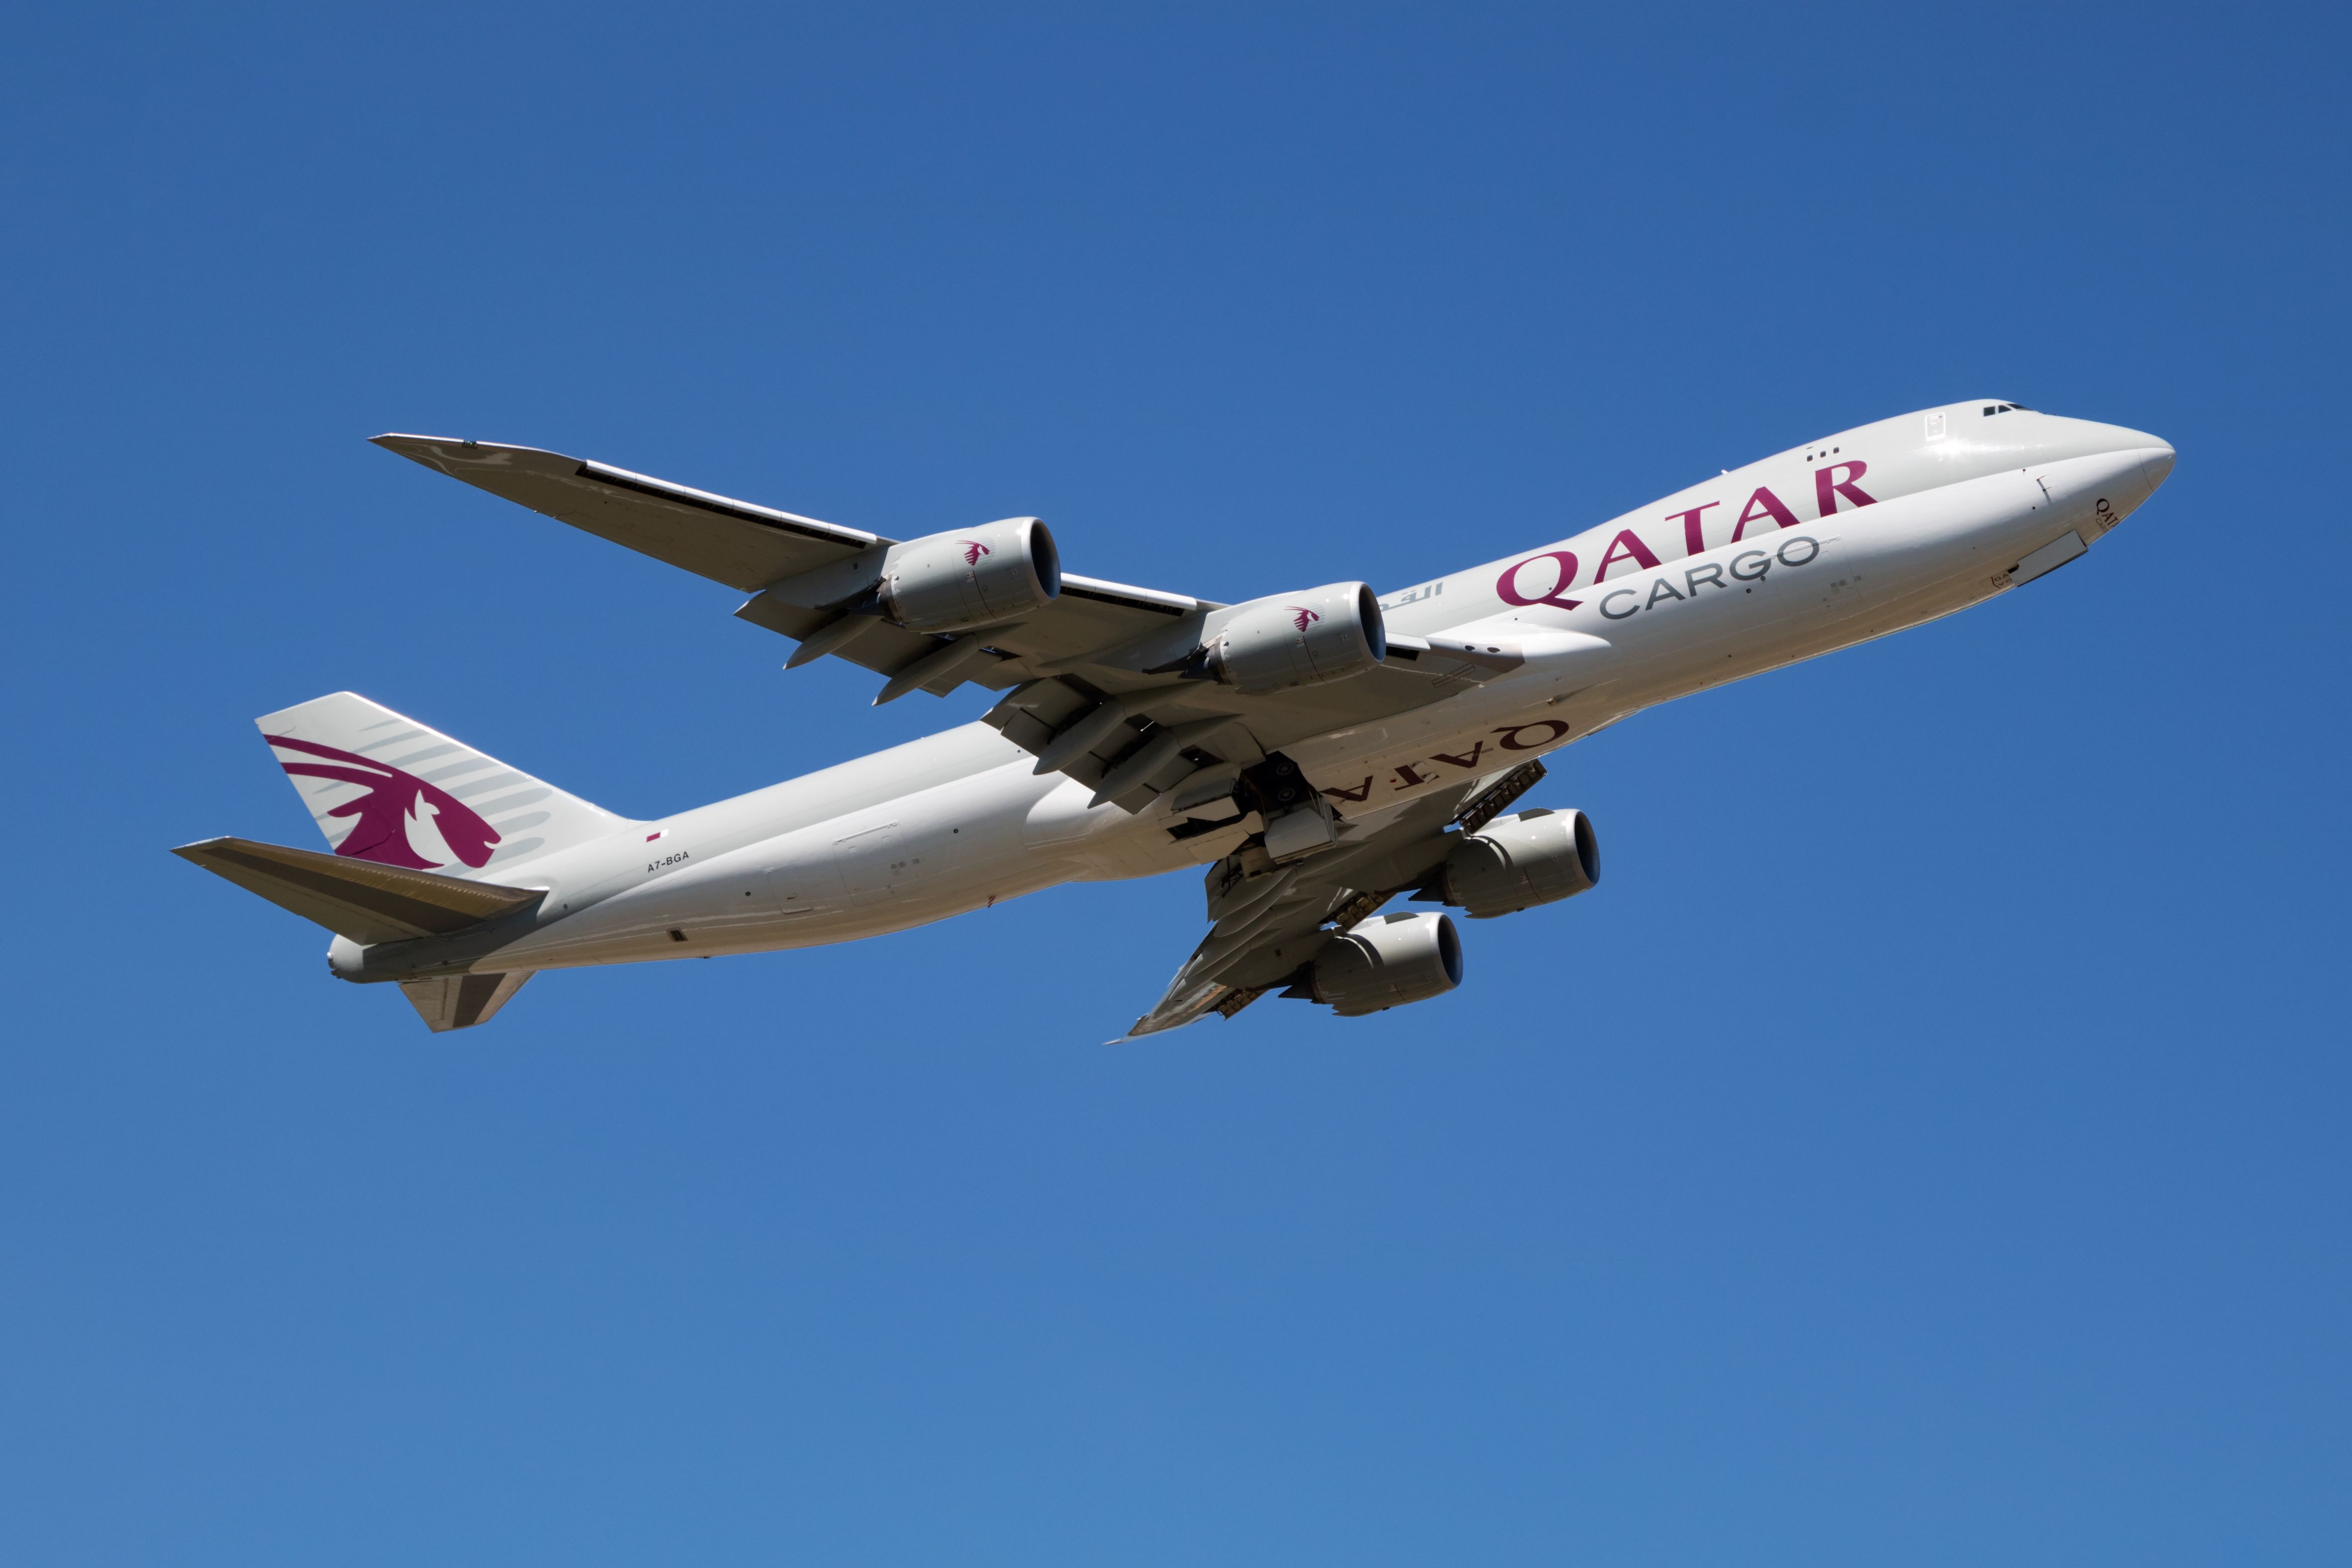 Qatar Airways Cargo Boeing 747-8F departing Luxembourg shutterstock_1669338214